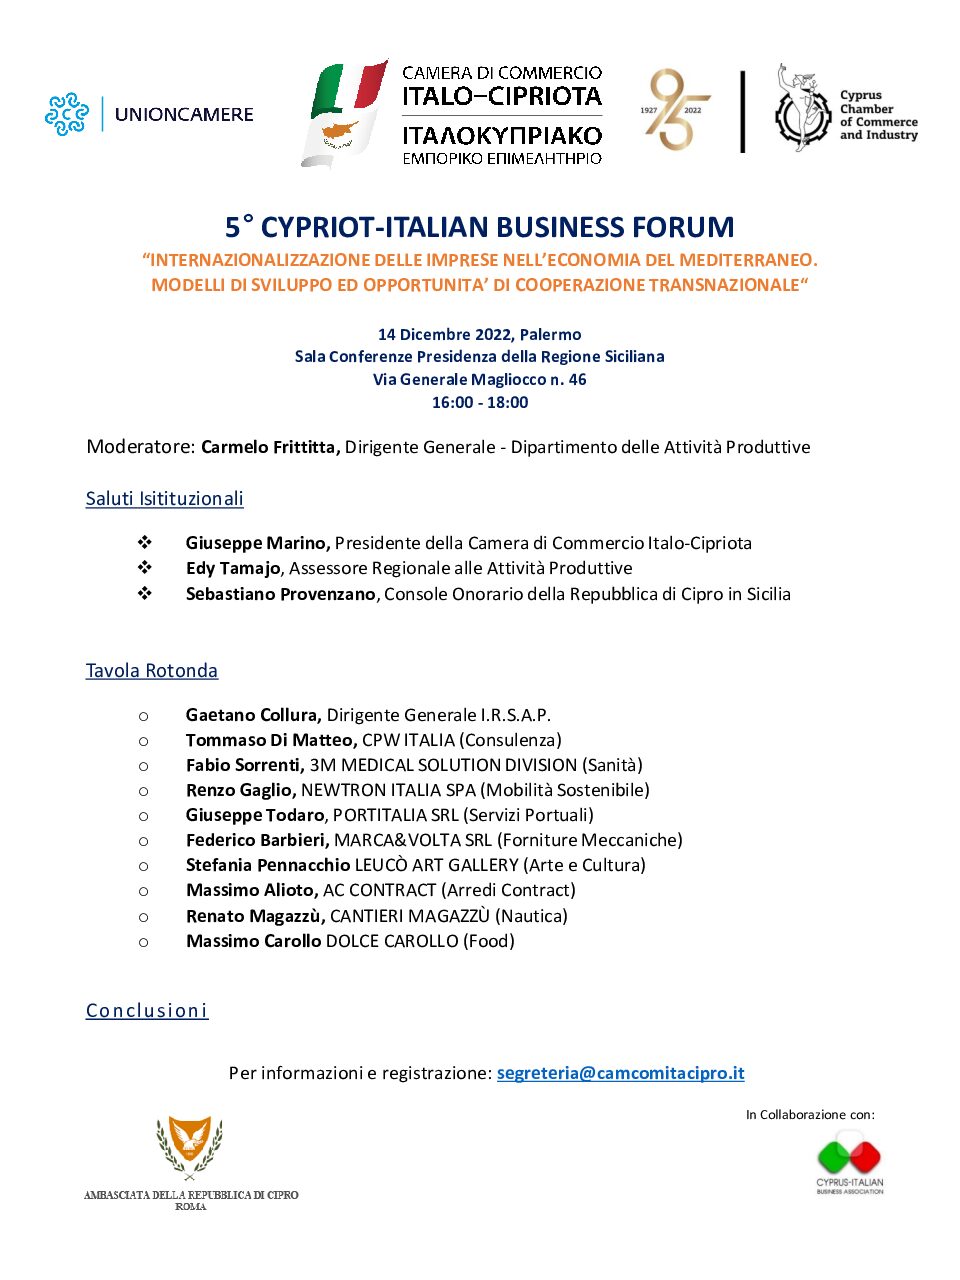 Commercio, domani a Palermo il Cypriot-Italian Business Forum